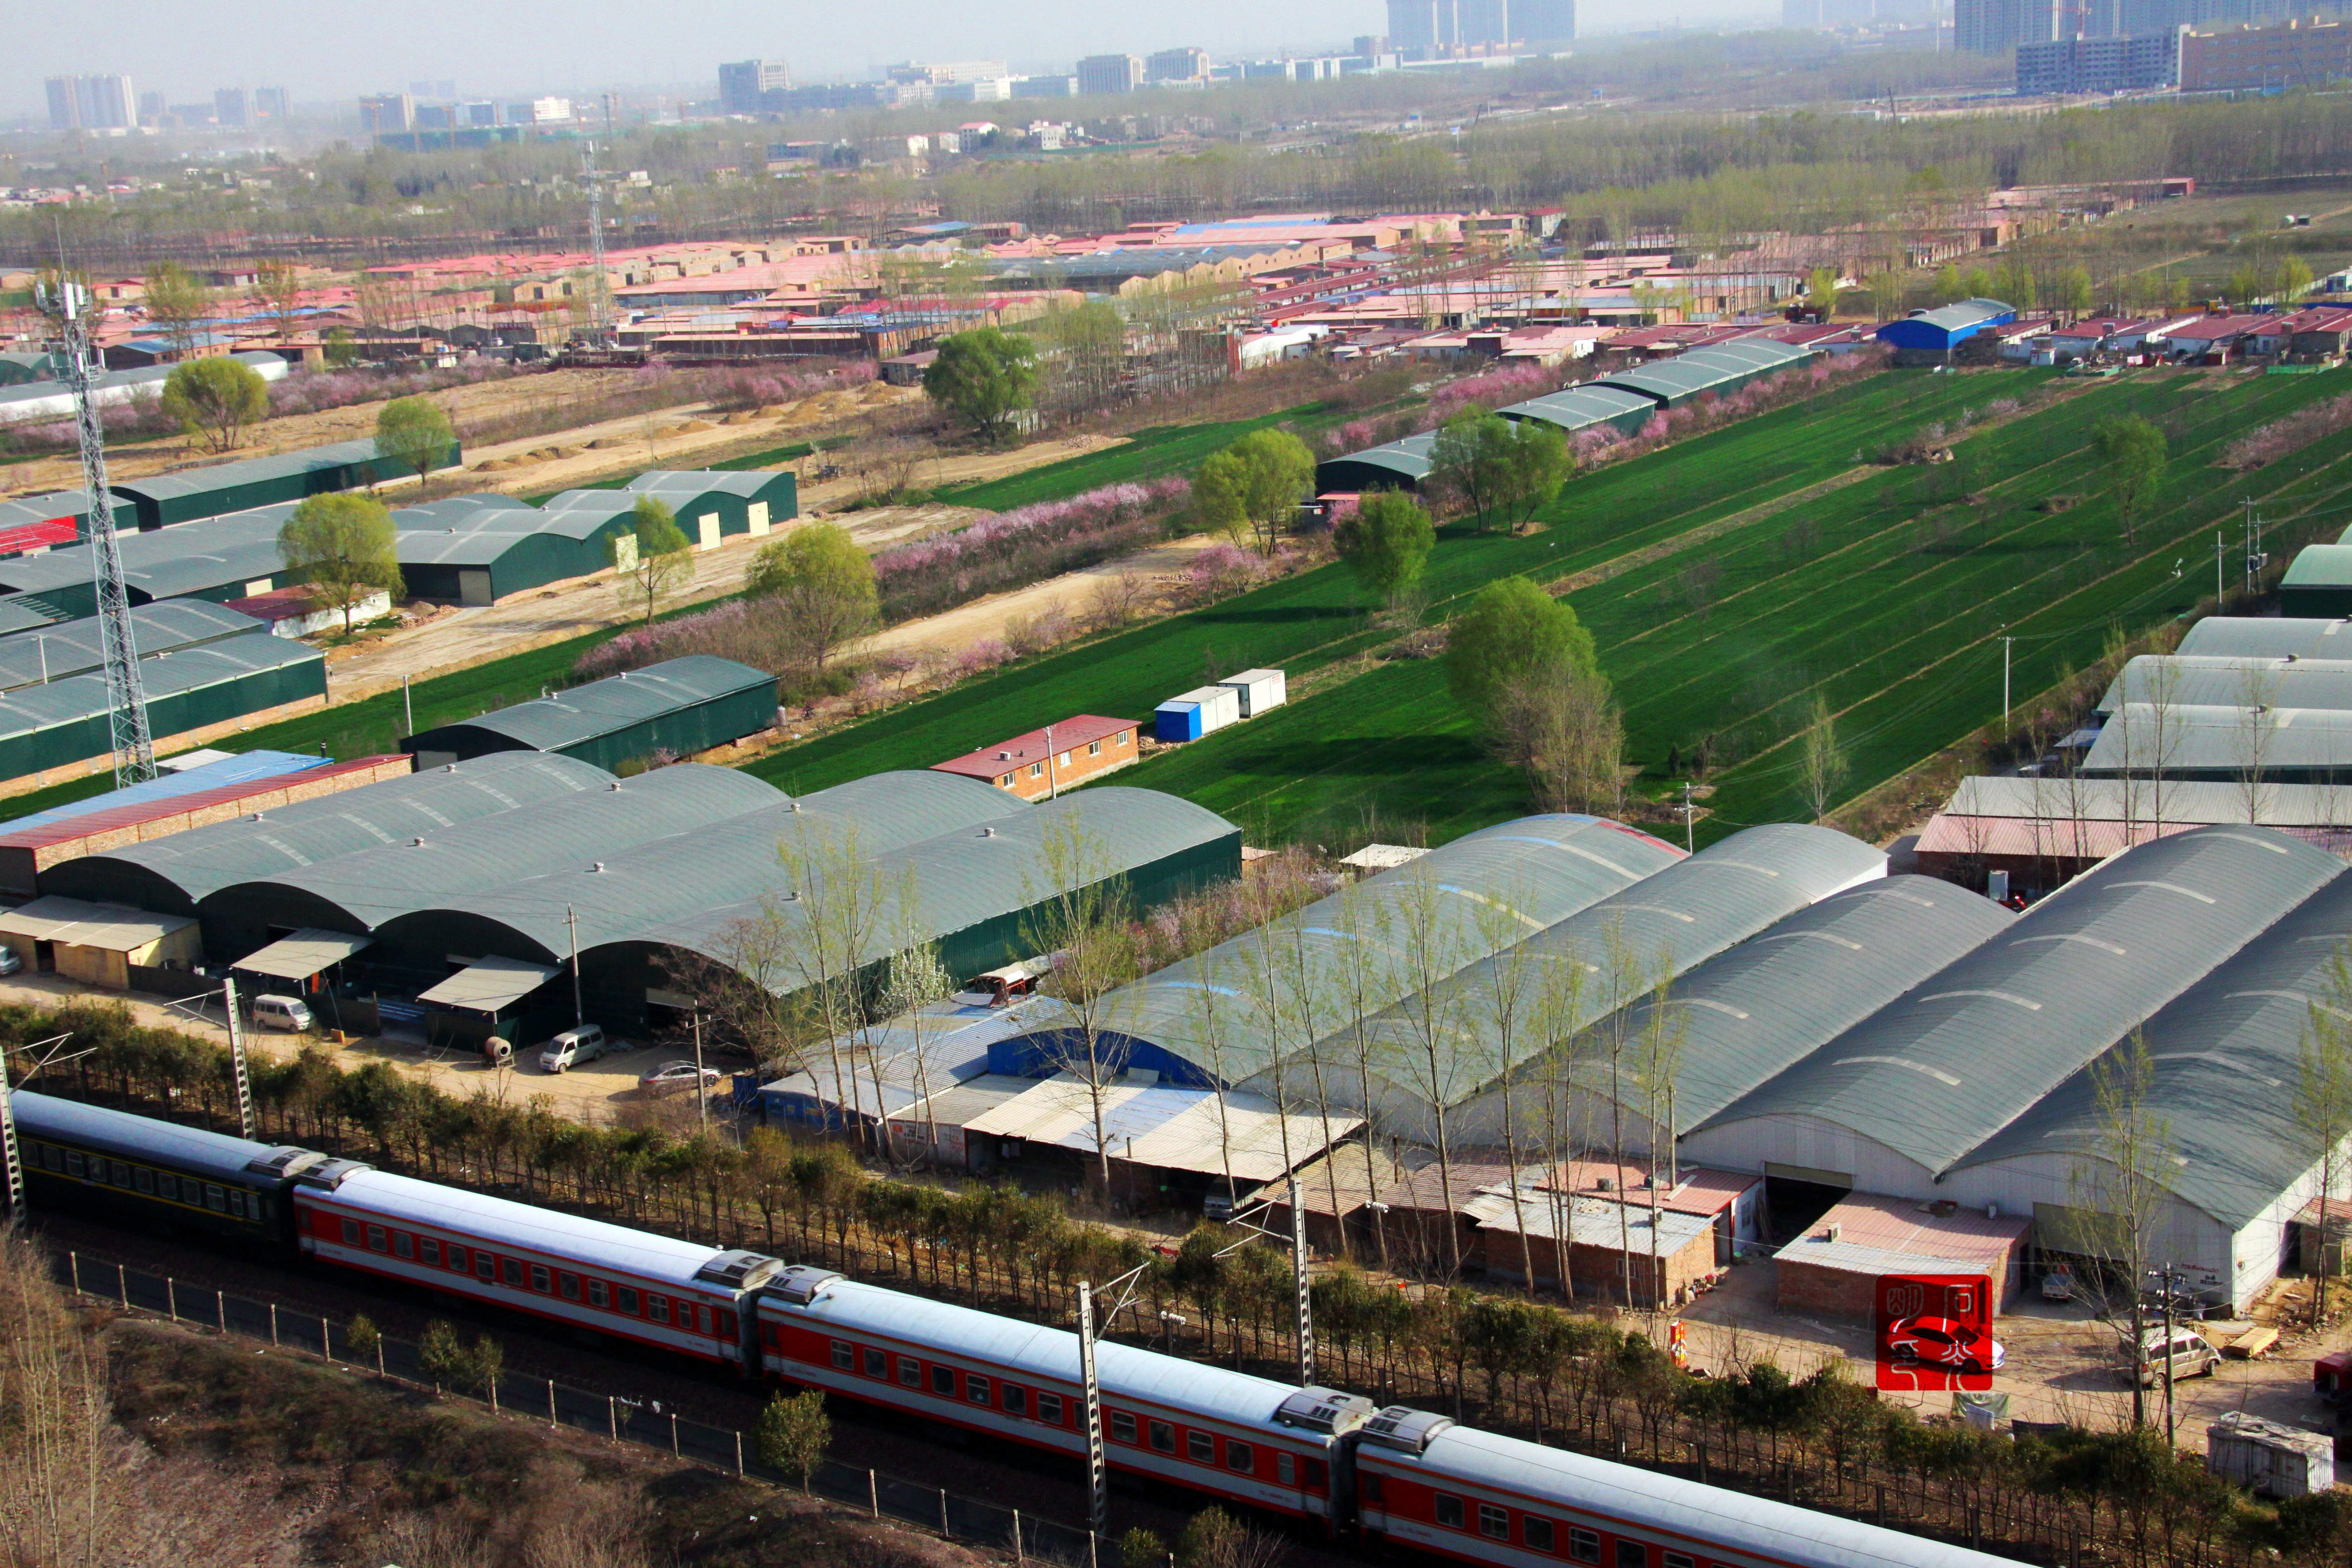 郑州陇海铁路线上春意盎然 与列车相映成趣3月27日,河南省郑州市,天朗